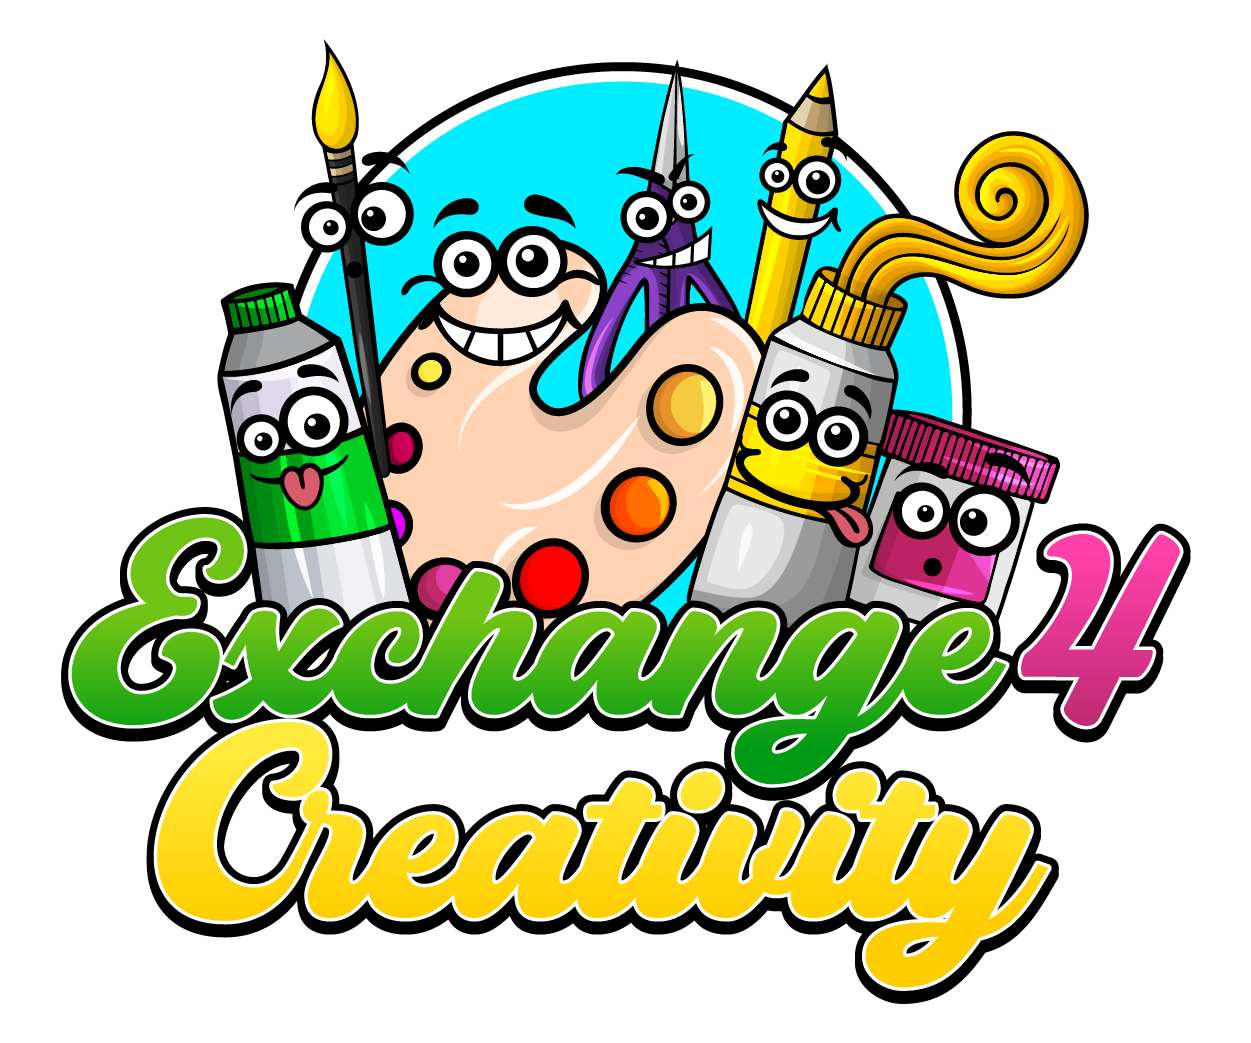 Exchange 4 Creativity